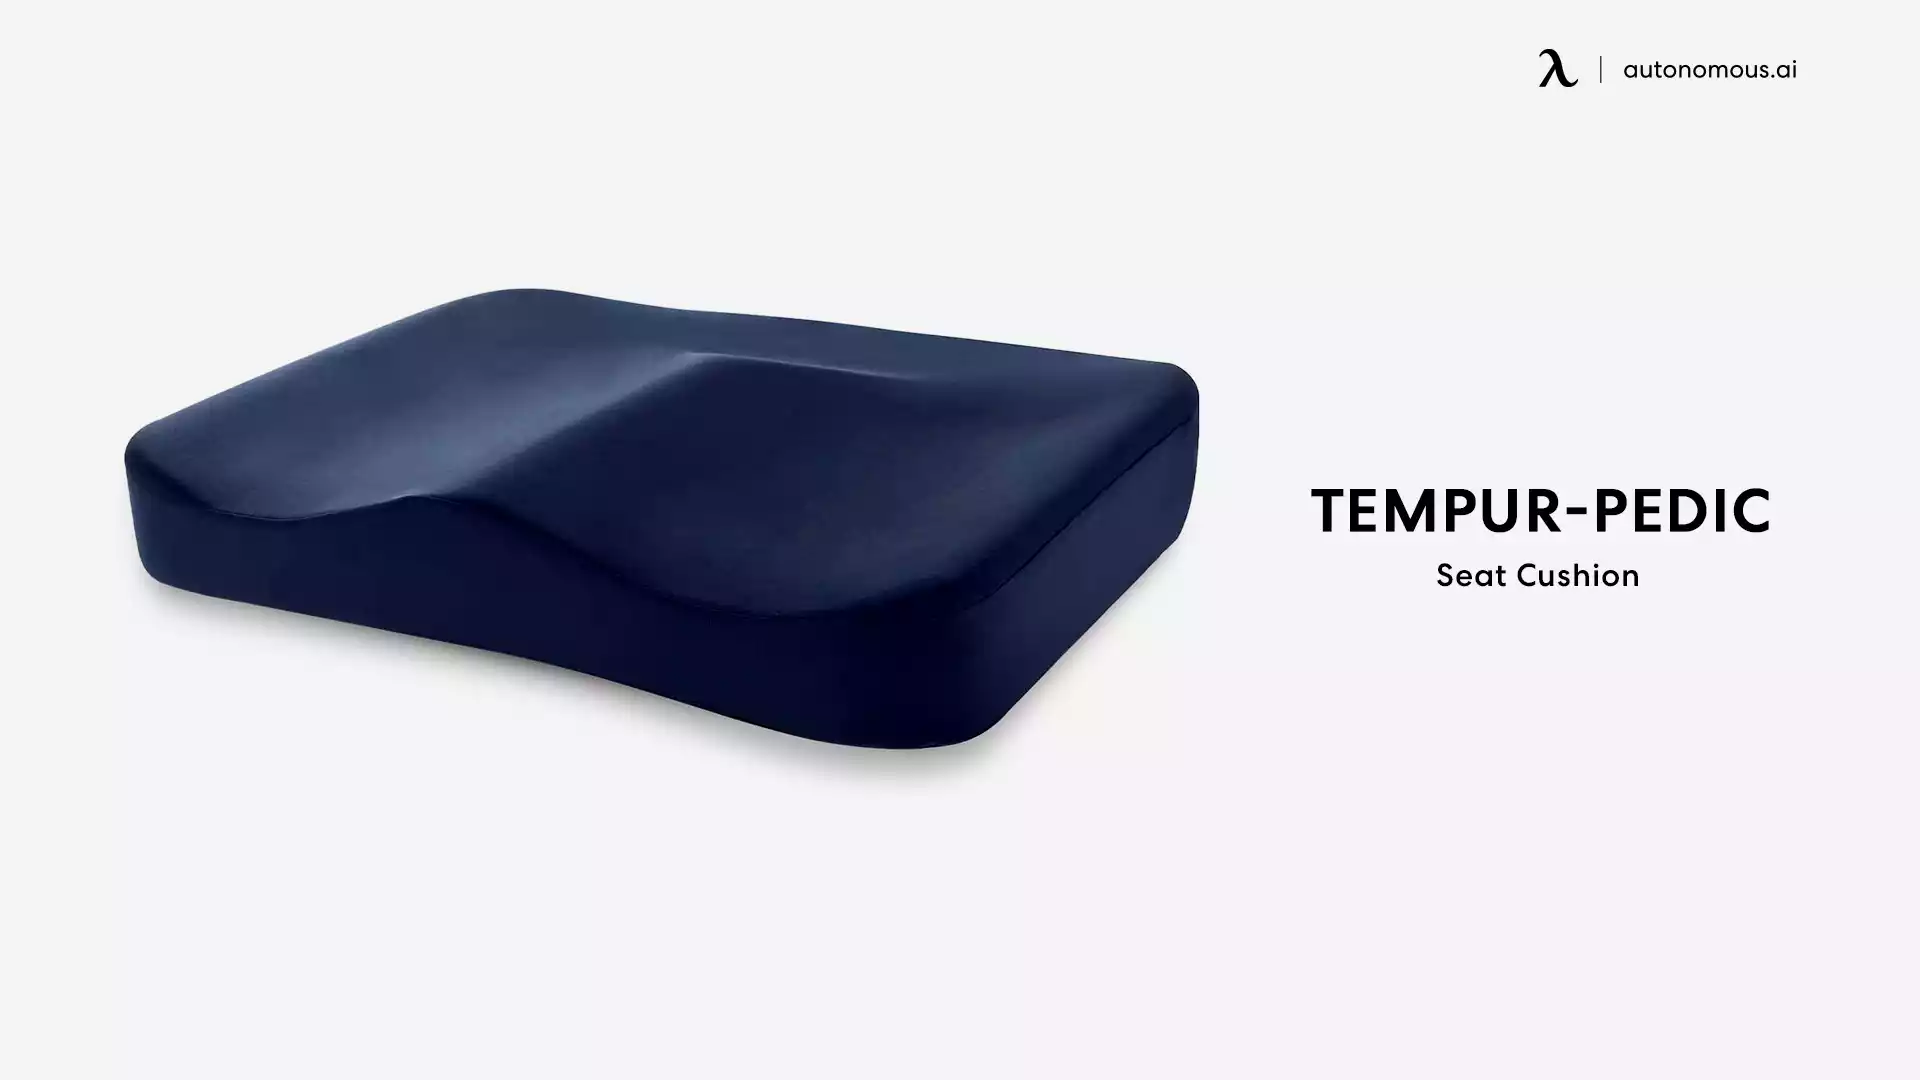 Tempur-Pedic ergonomic chair pillows